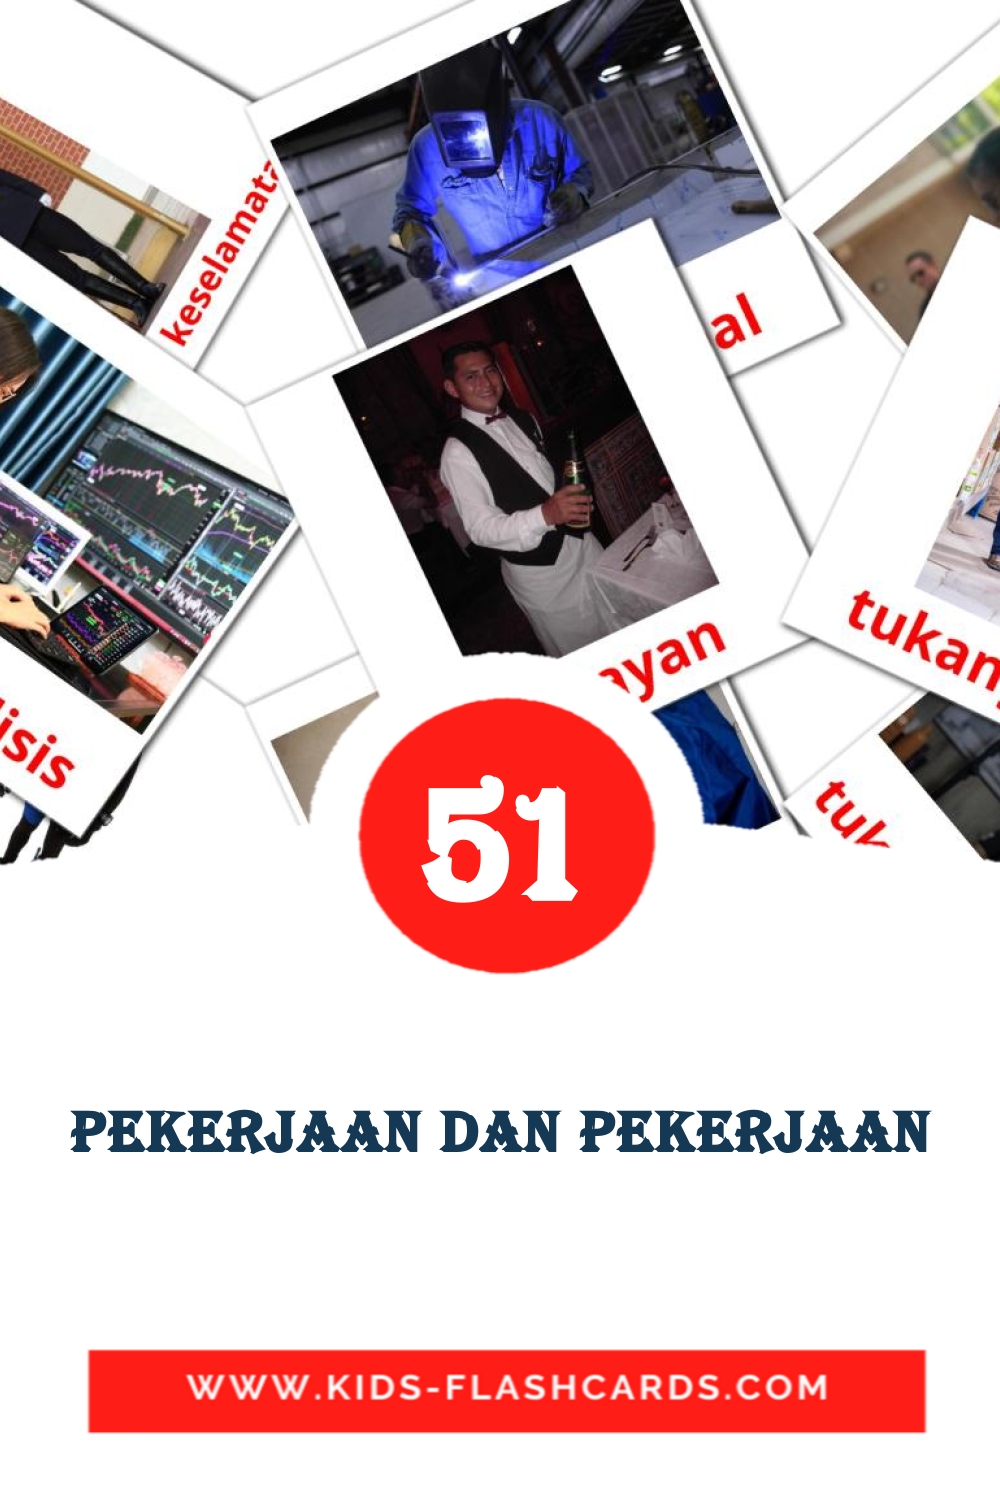 51 Pekerjaan dan Pekerjaan fotokaarten voor kleuters in het malay